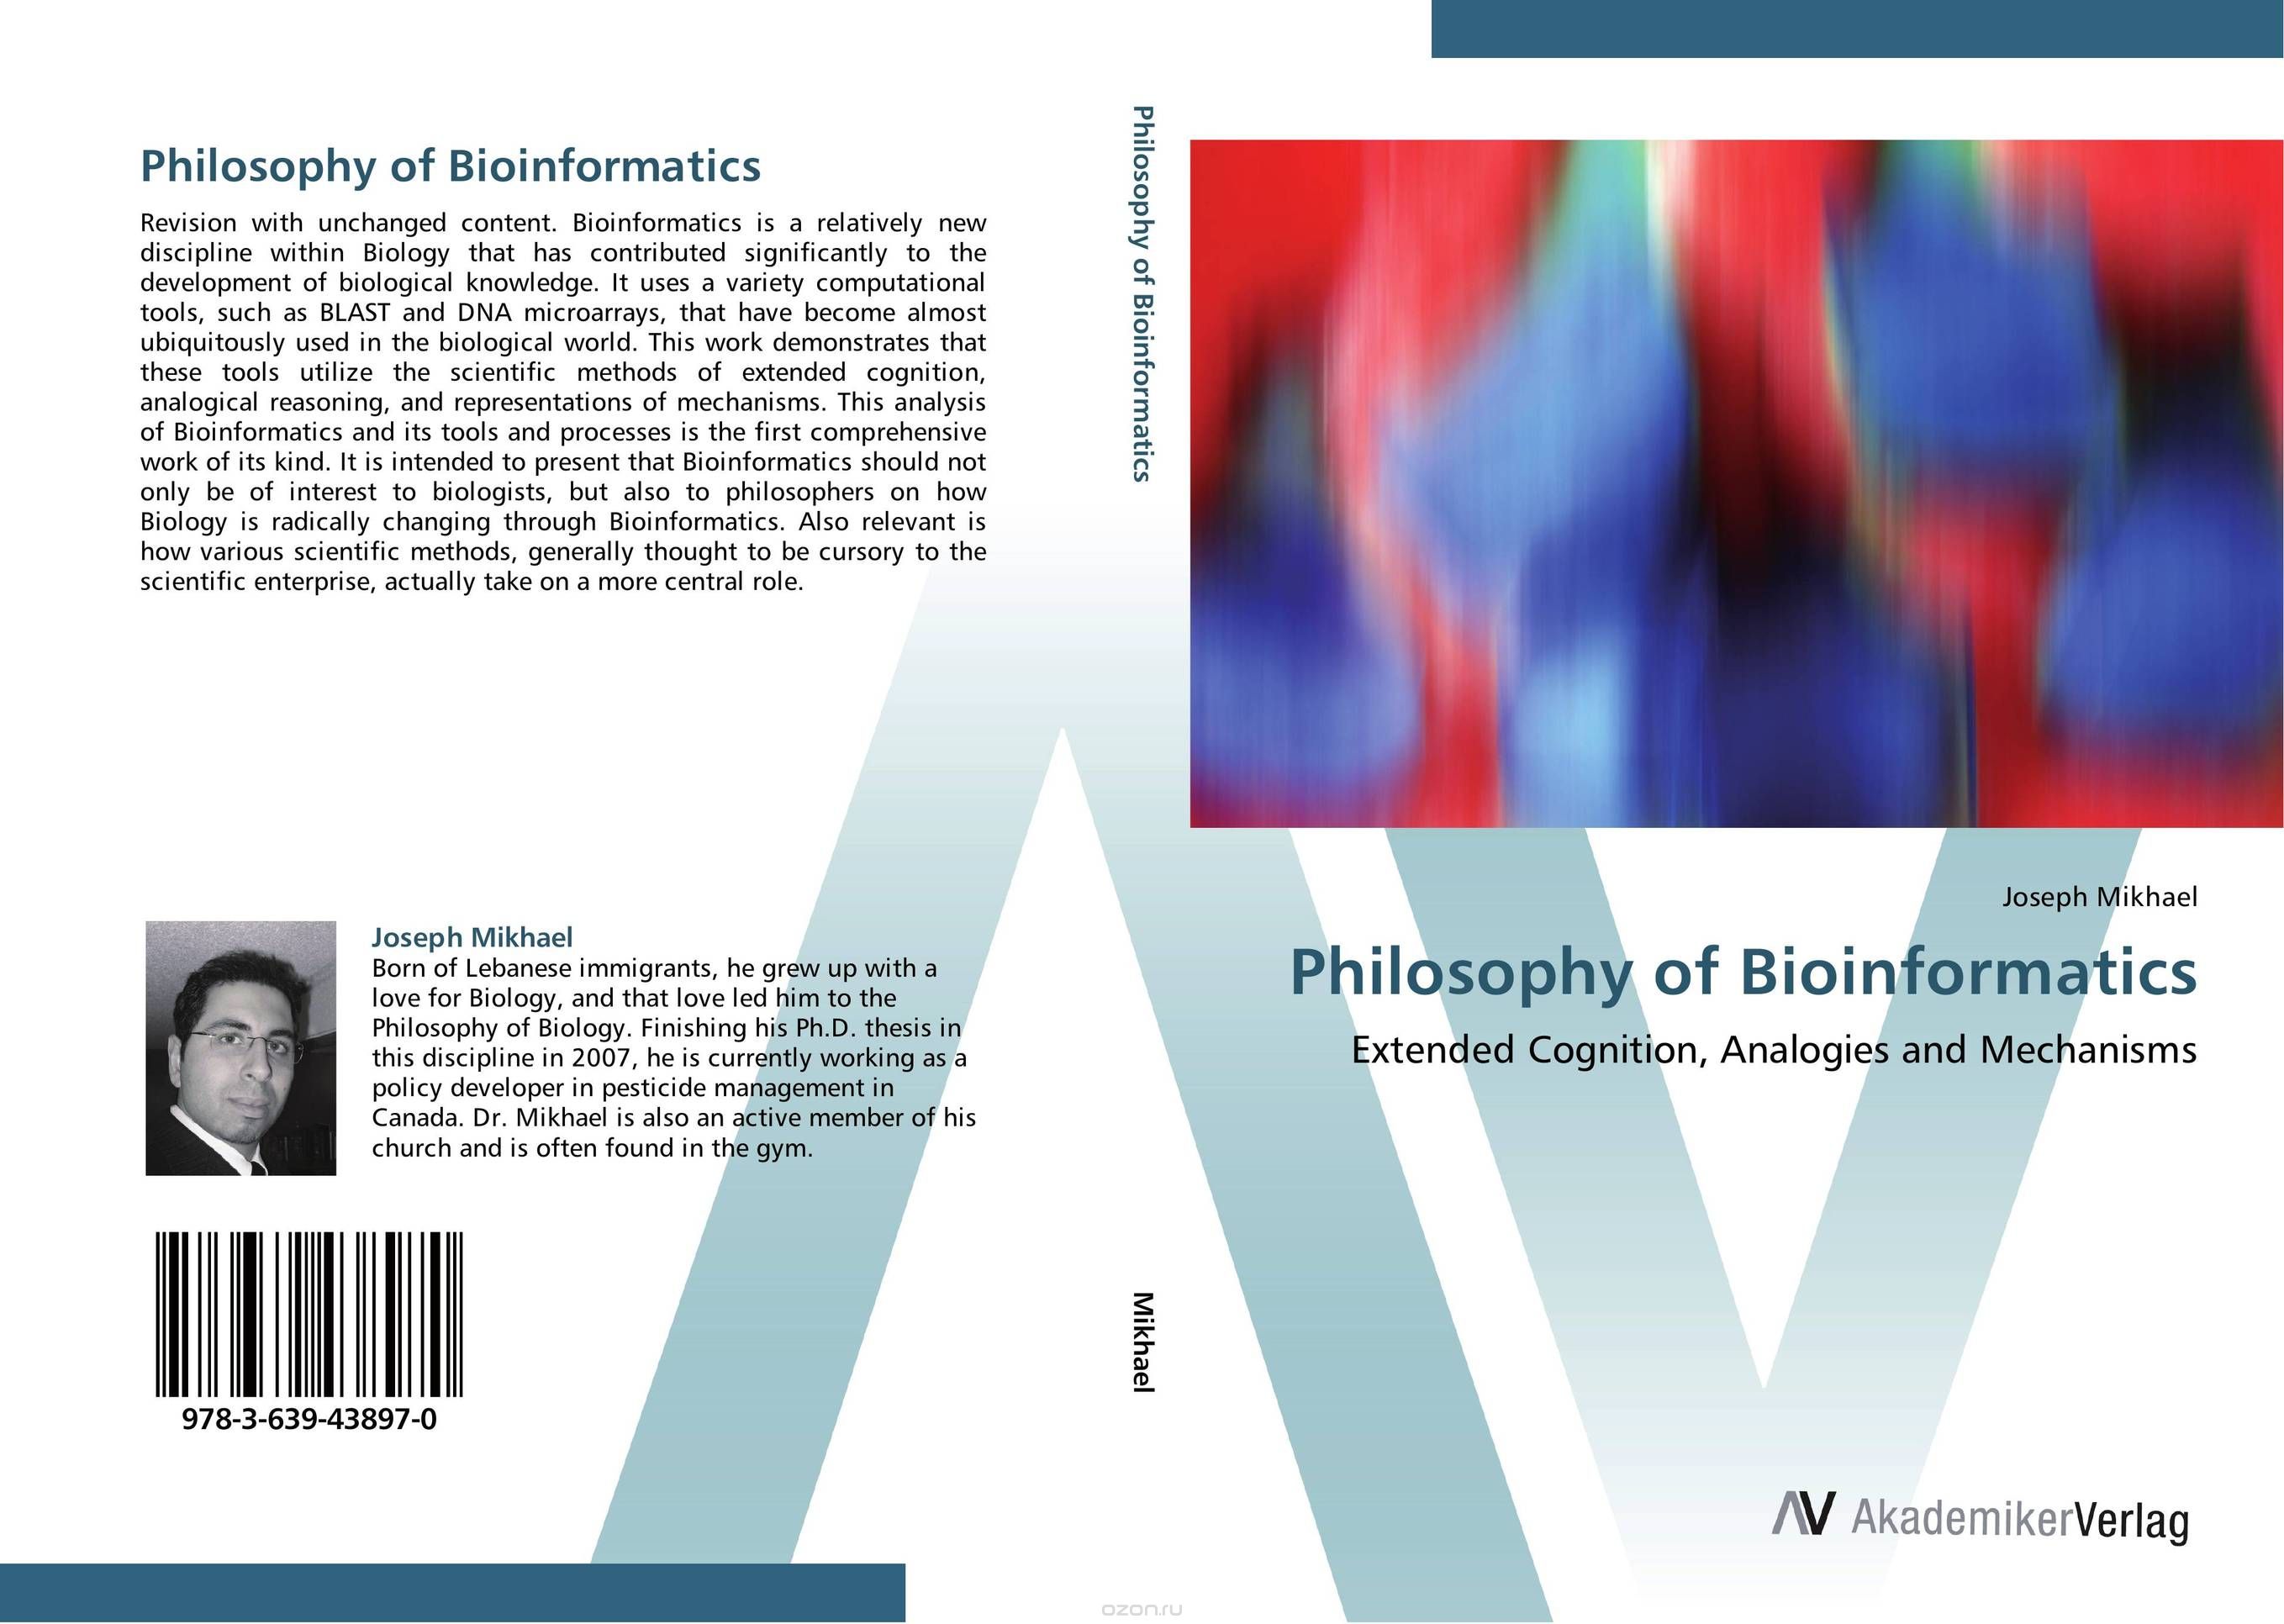 Скачать книгу "Philosophy of Bioinformatics"